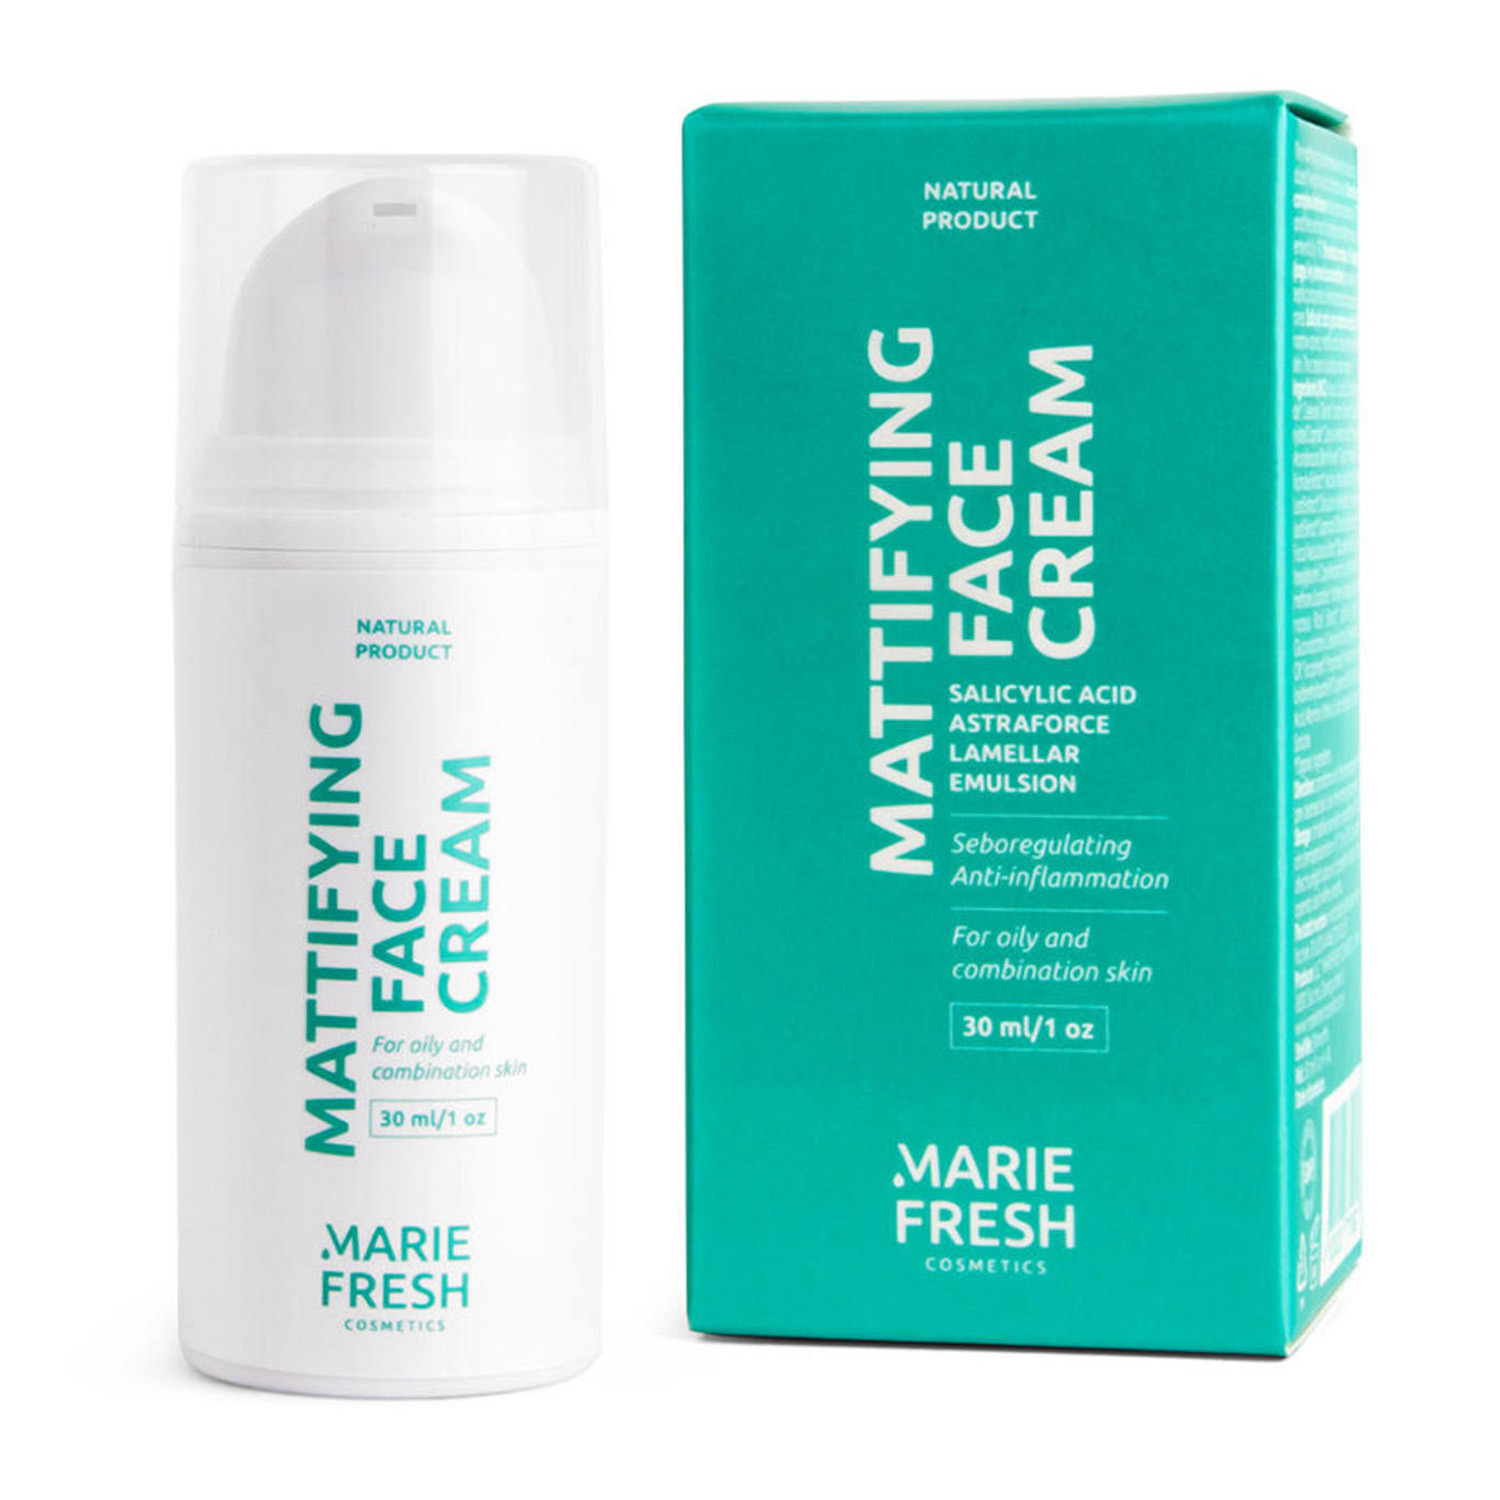 Матирующий крем с салициловой кислотой для жирной и комбинированной кожи Marie Fresh Cosmetics Mattifying Face Cream